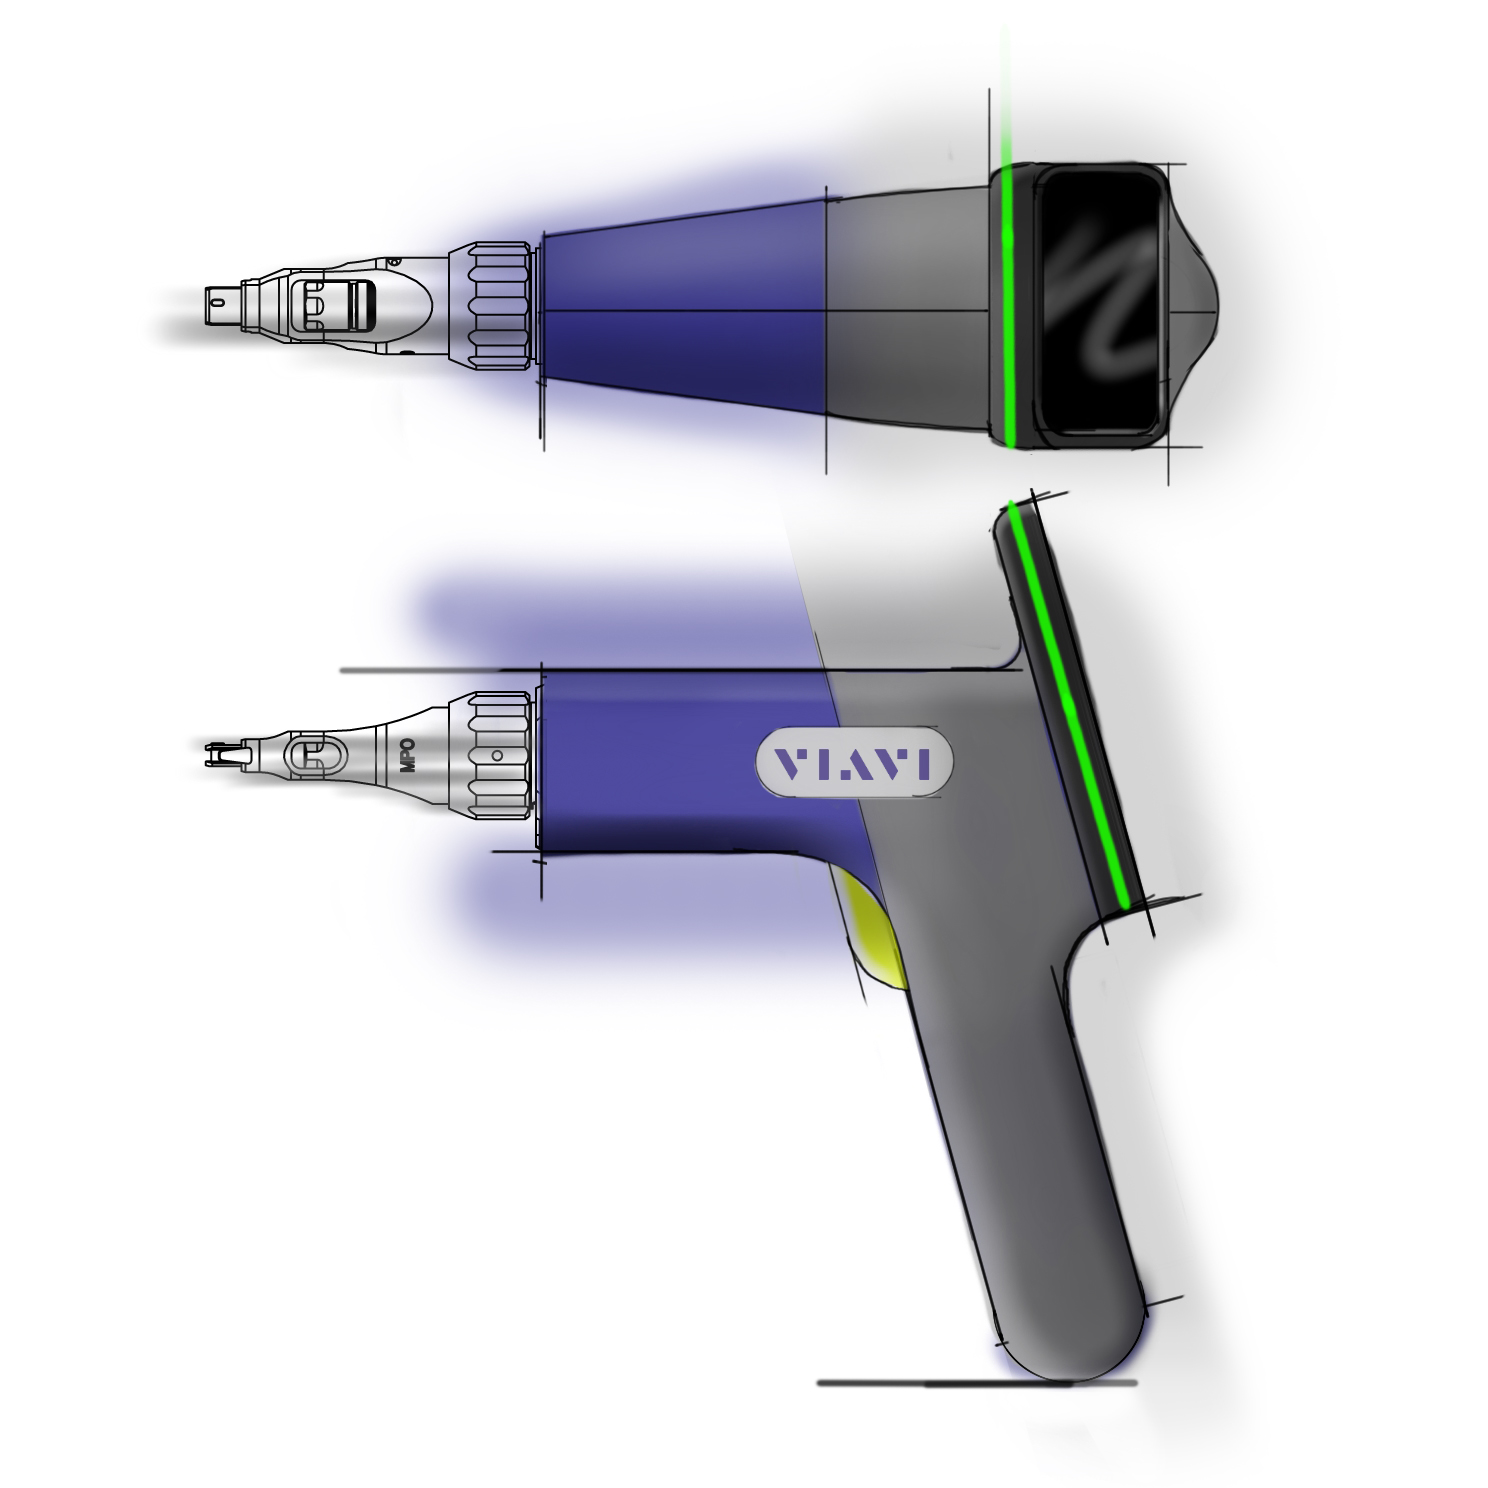 Concept sketch of viavi fiber scope